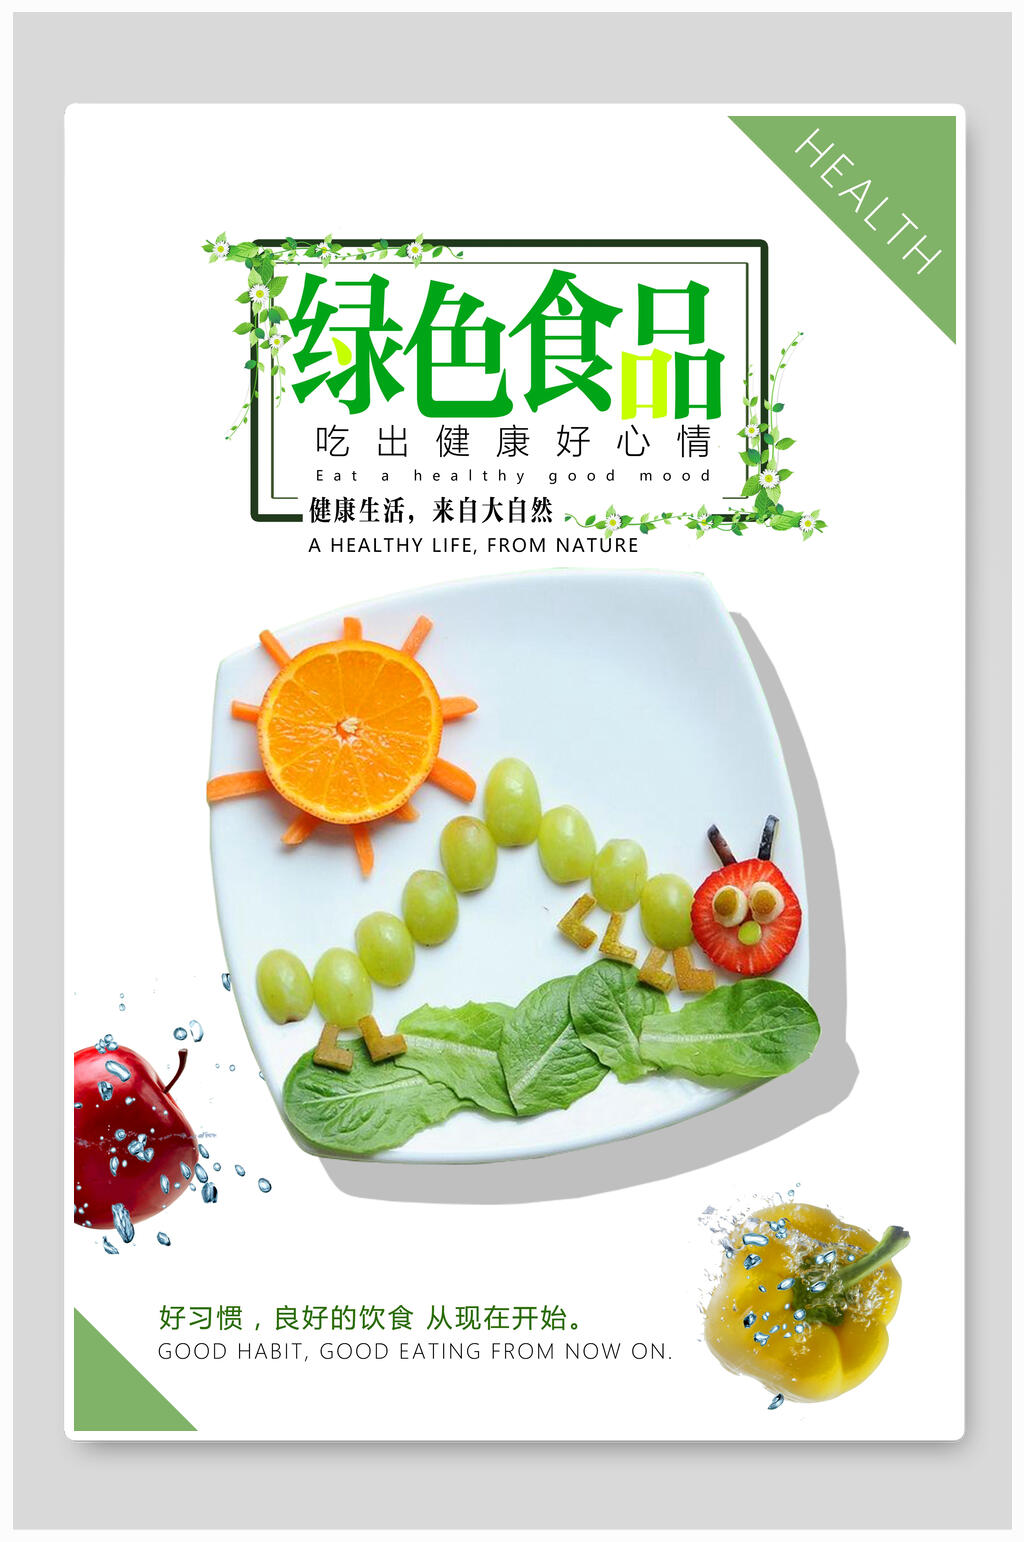 绿色食品海报素材免费下载,本作品是由你好上传的原创平面广告素材